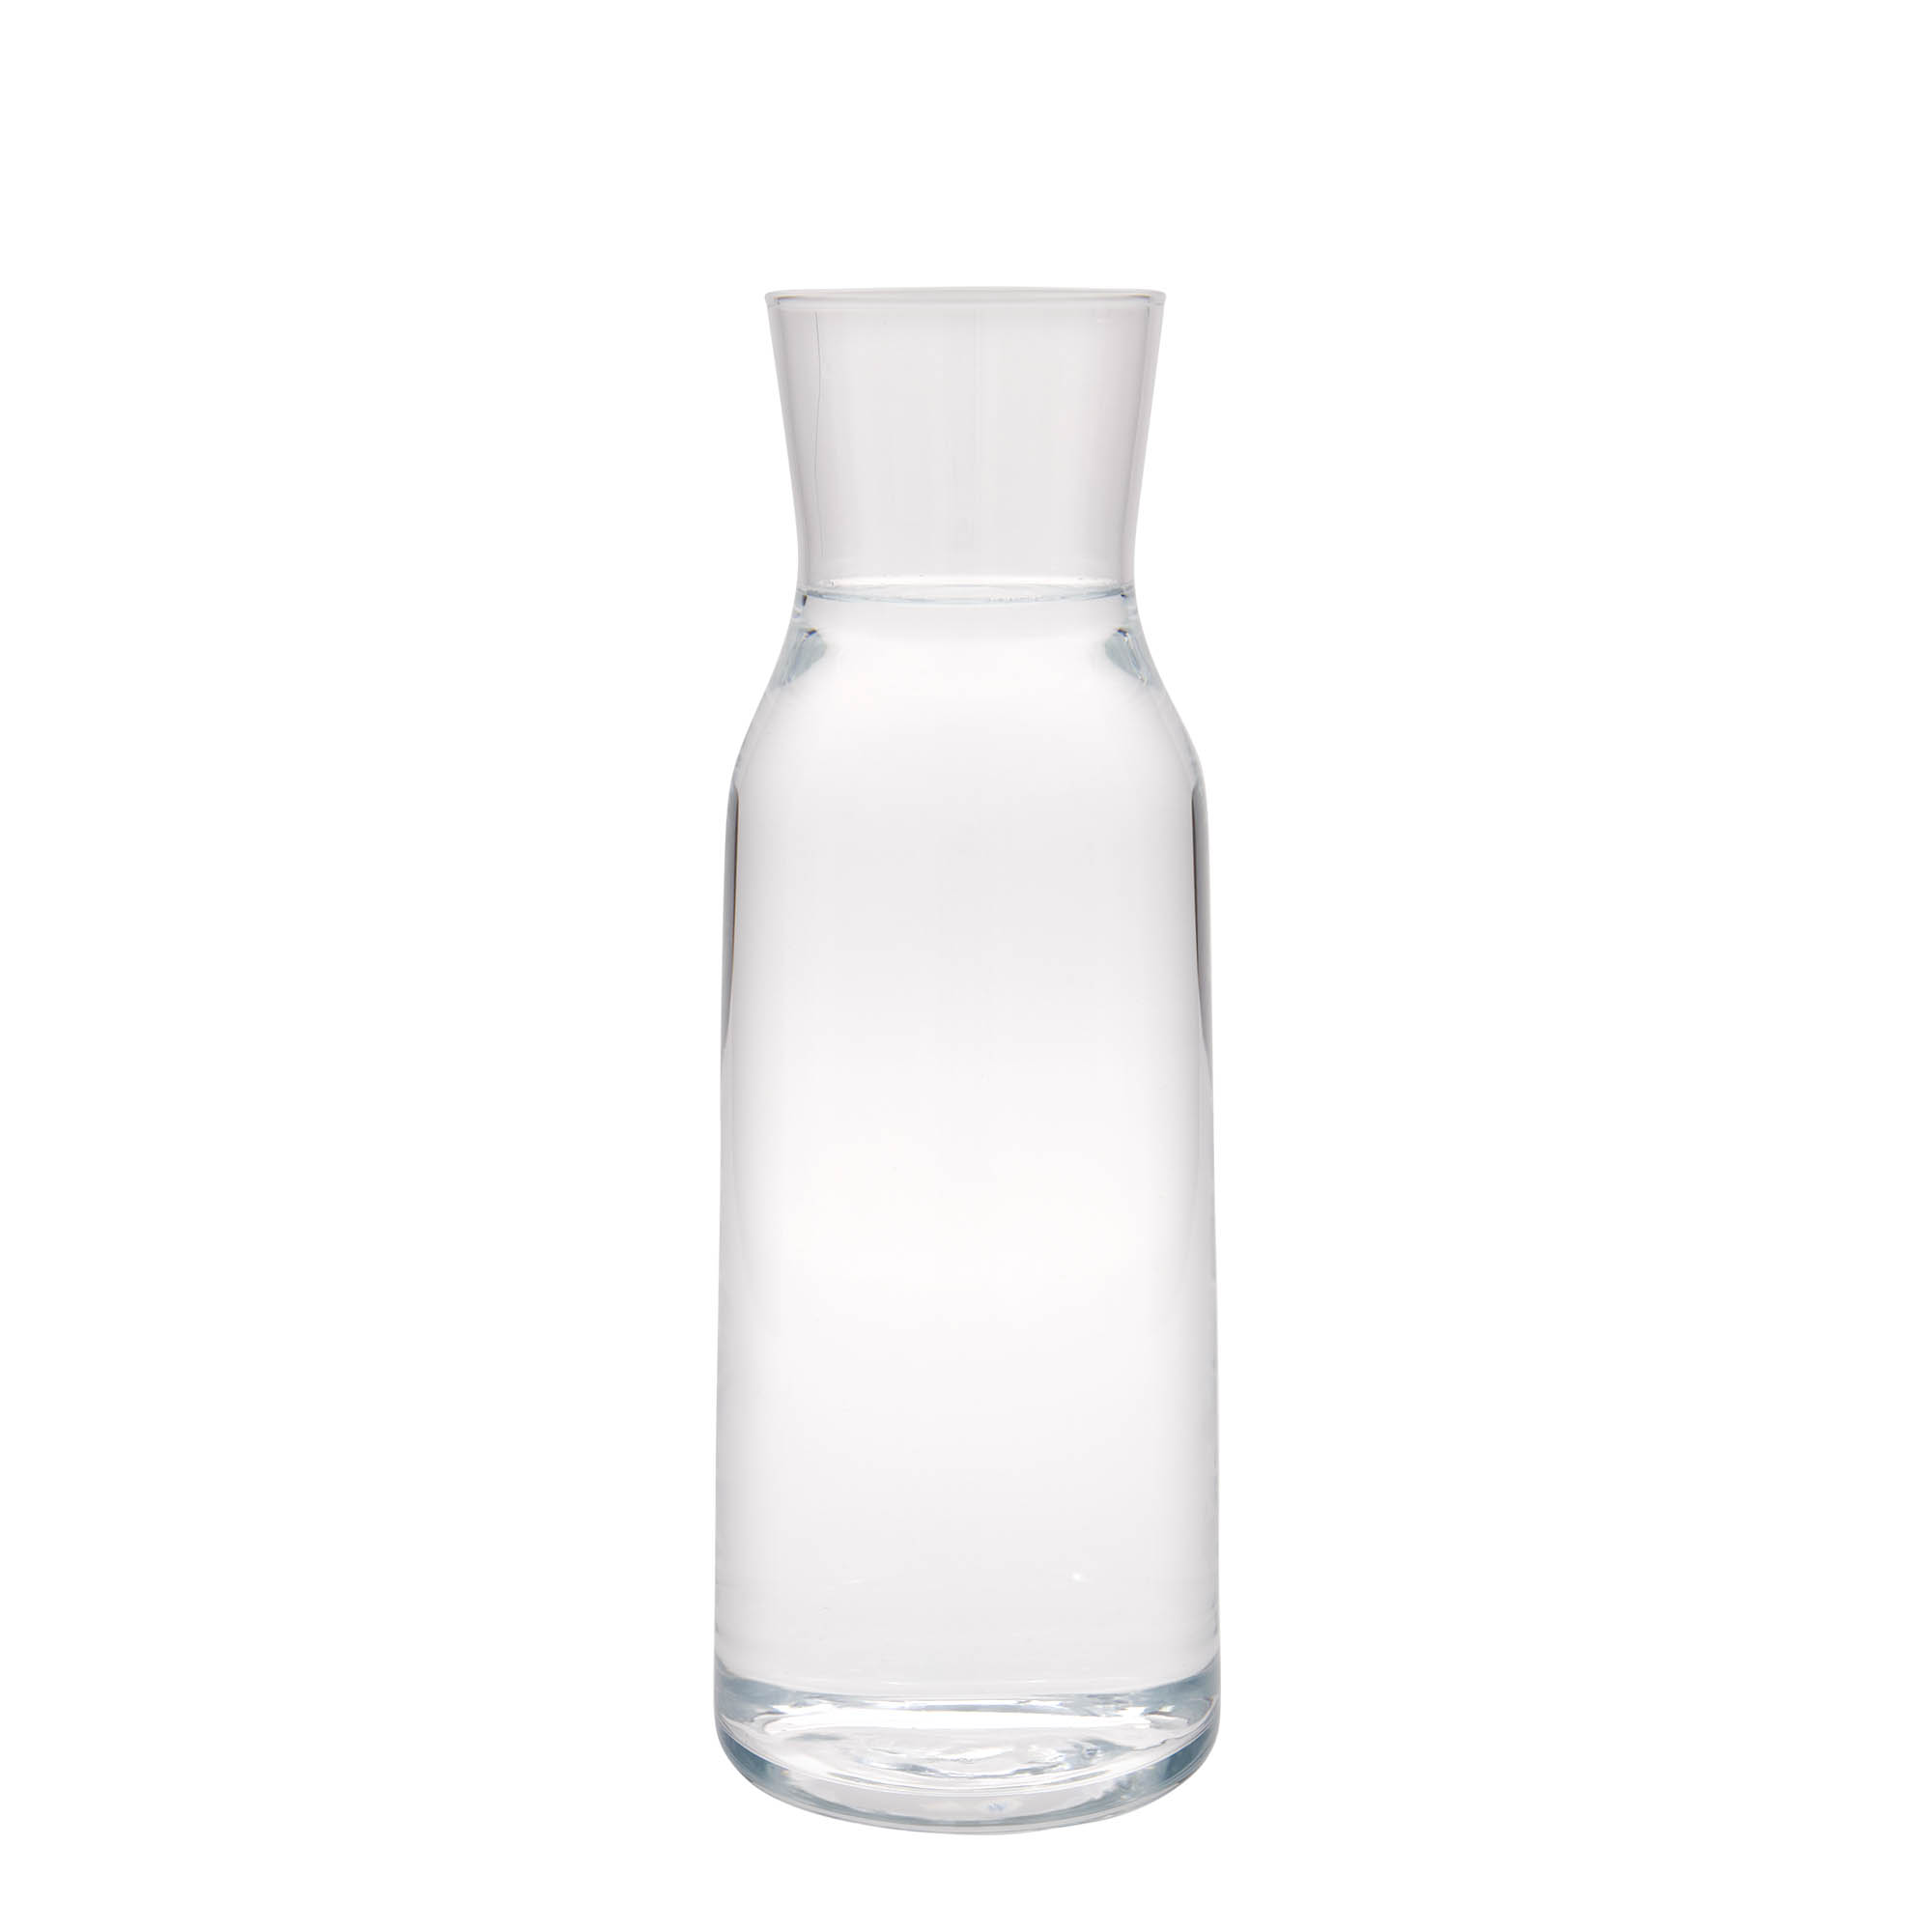 1,100 ml carafe 'Aquaria', glass